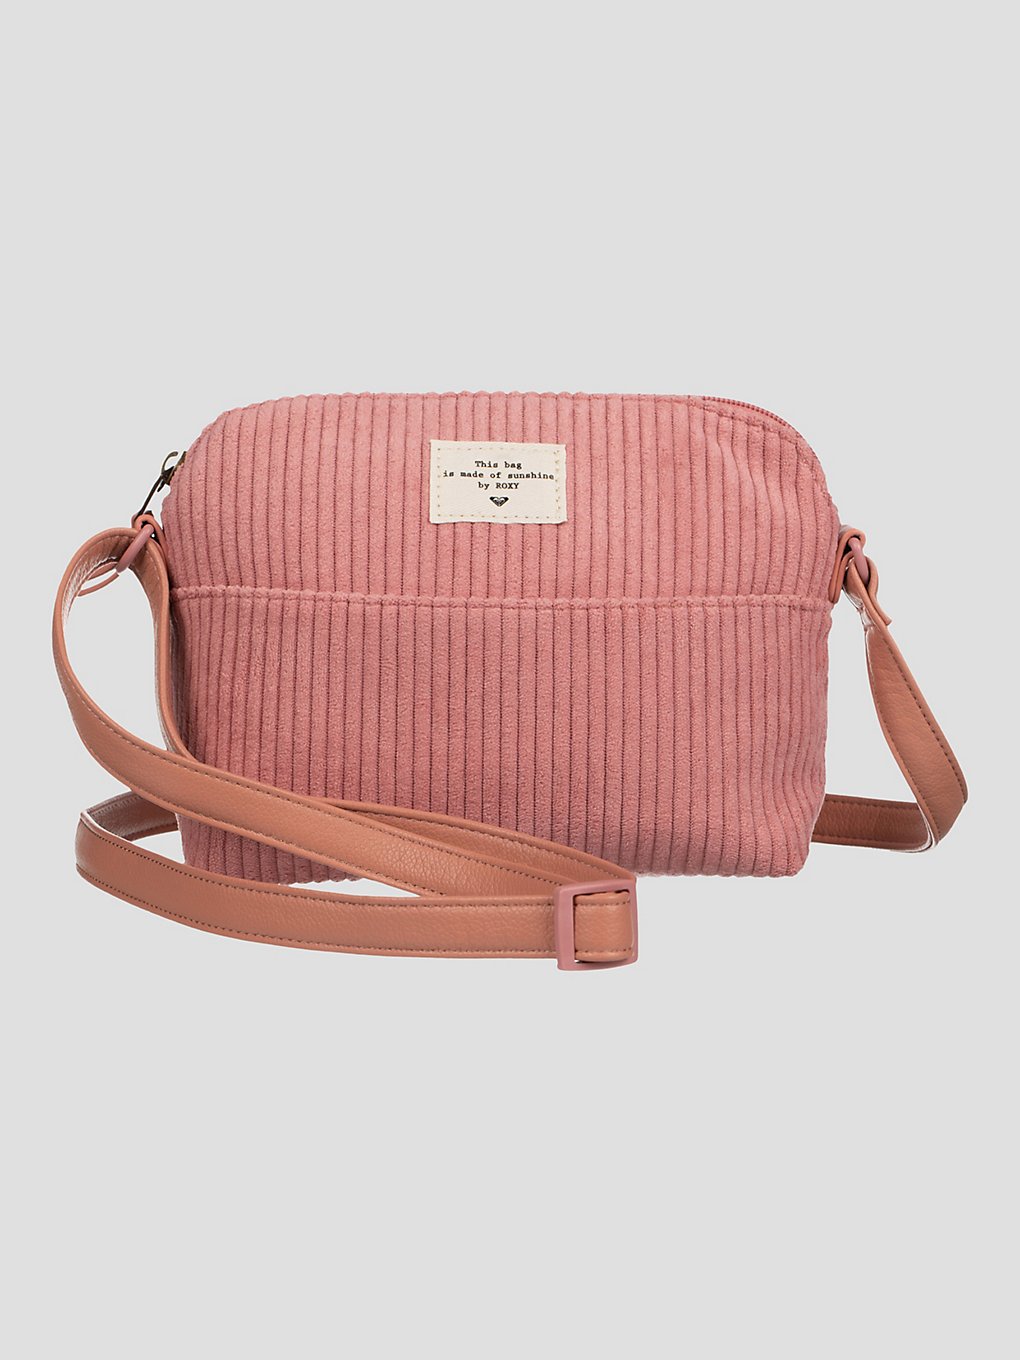 Roxy Cozy Nature Crossbody Handtasche sachet pink kaufen